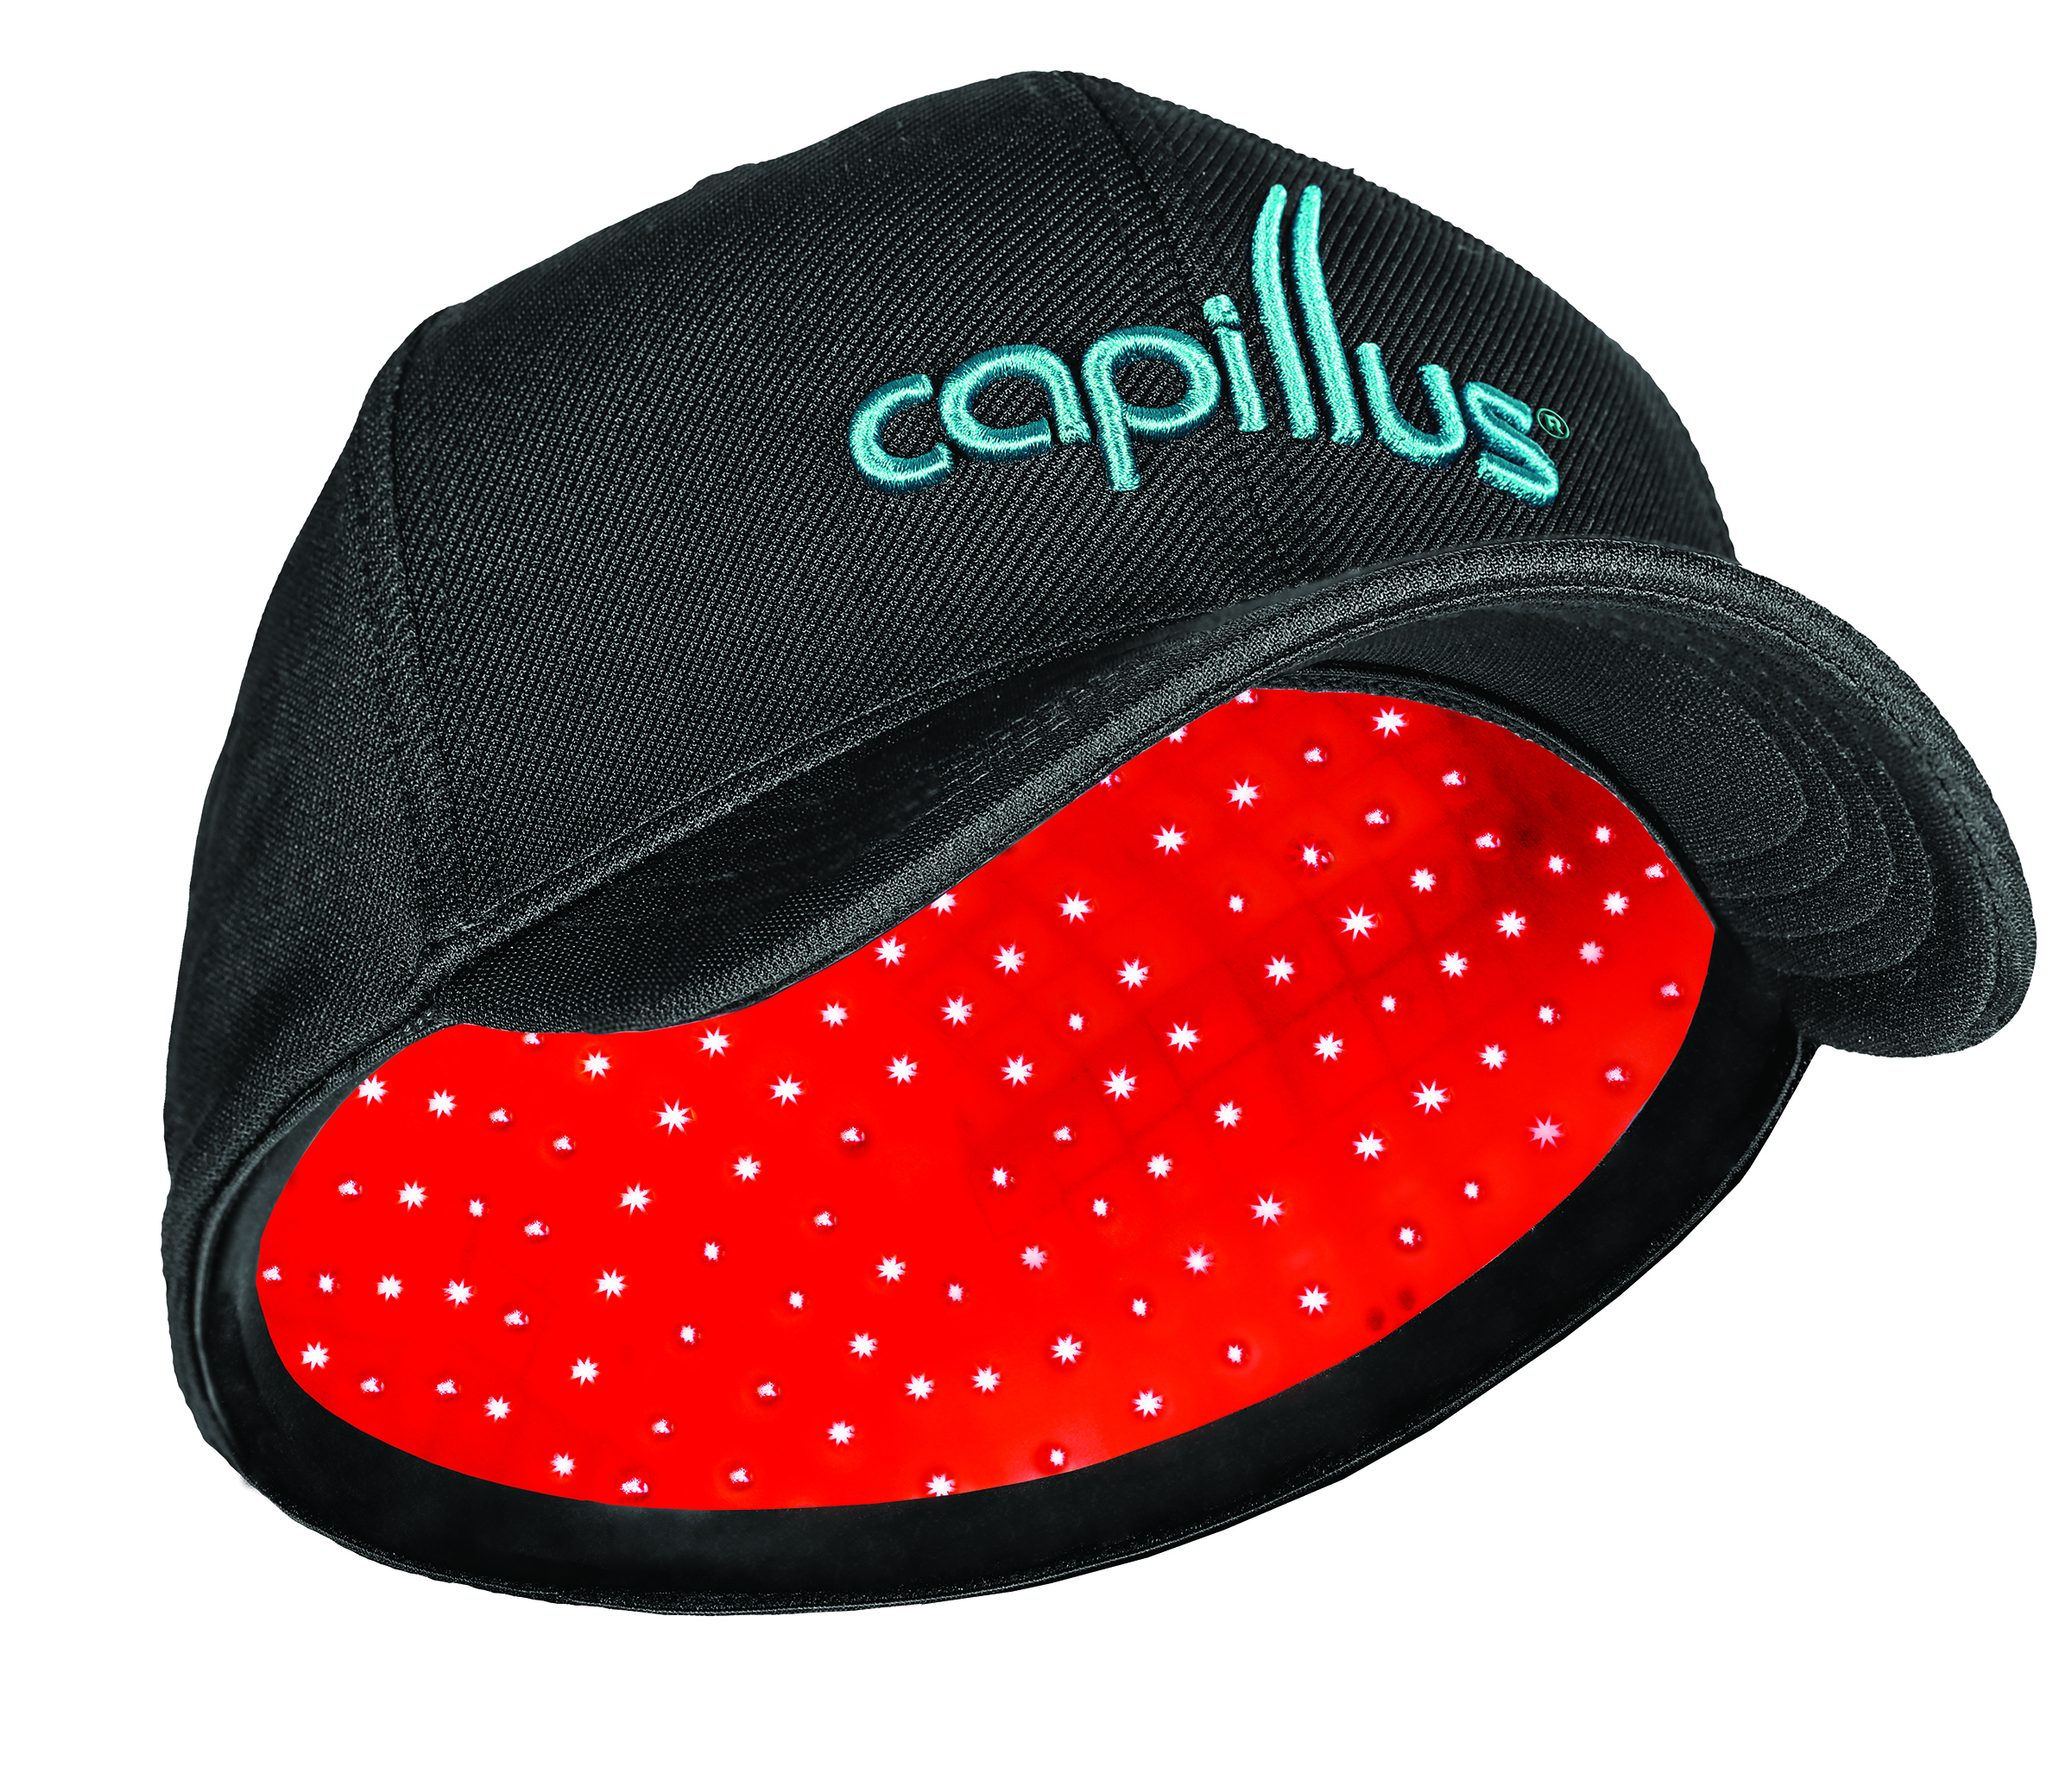 Capillus Pro Laser Cap